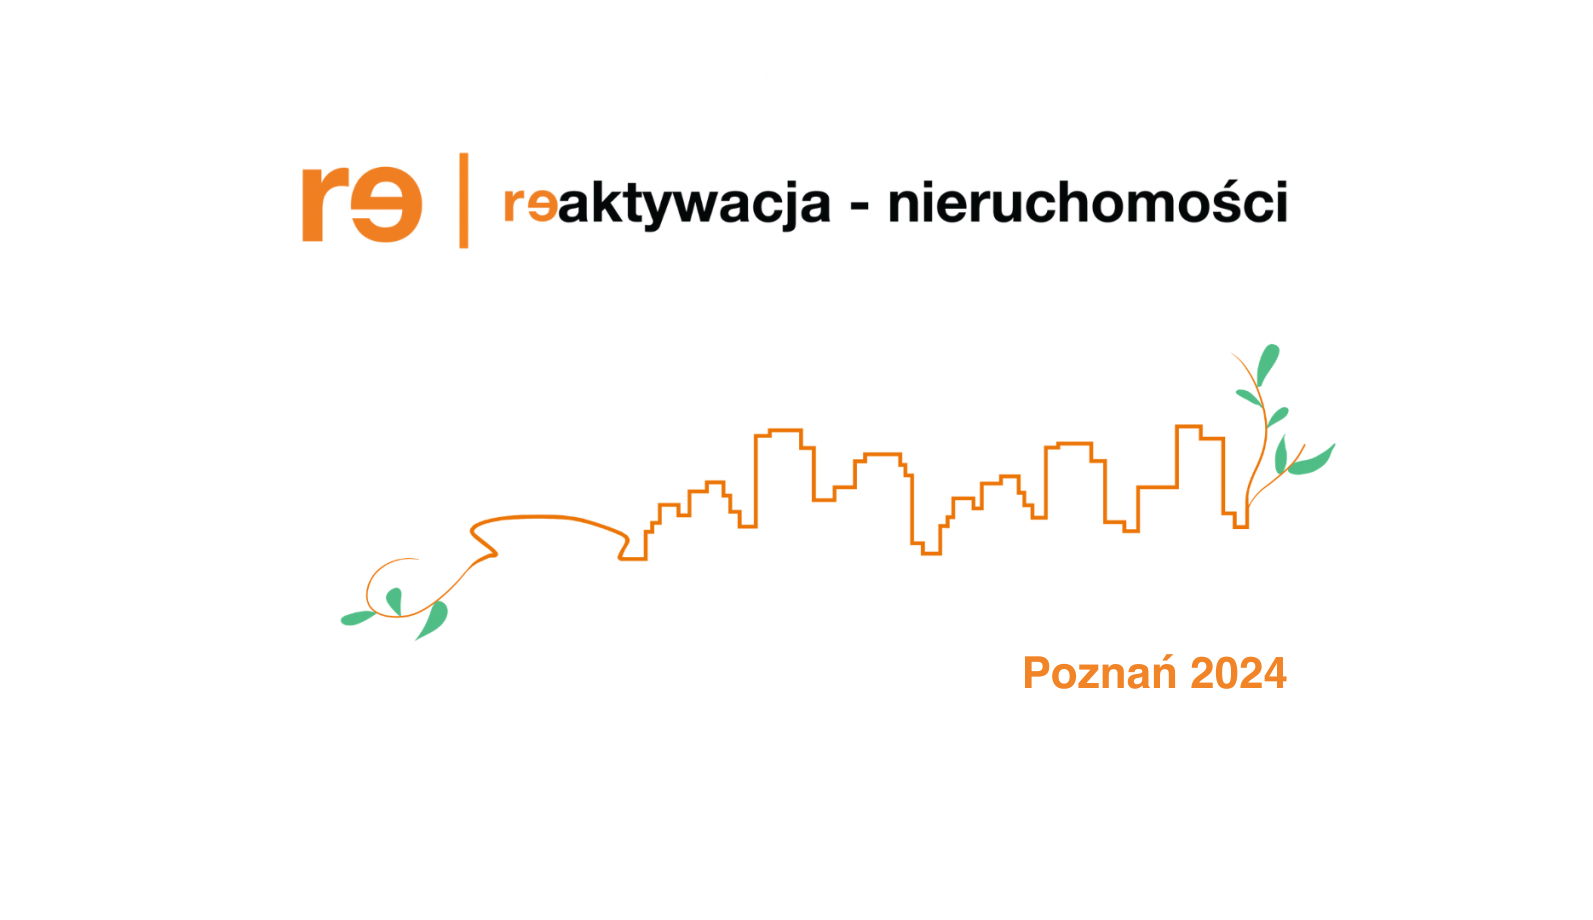 Zapraszamy na konferencję Reaktywacja Nieruchomości 2024 w Poznaniu. Wydarzenie to odbędzie się w gmachu Urzędu Miasta przy placu Kolegiackim 17, w sali Białej.